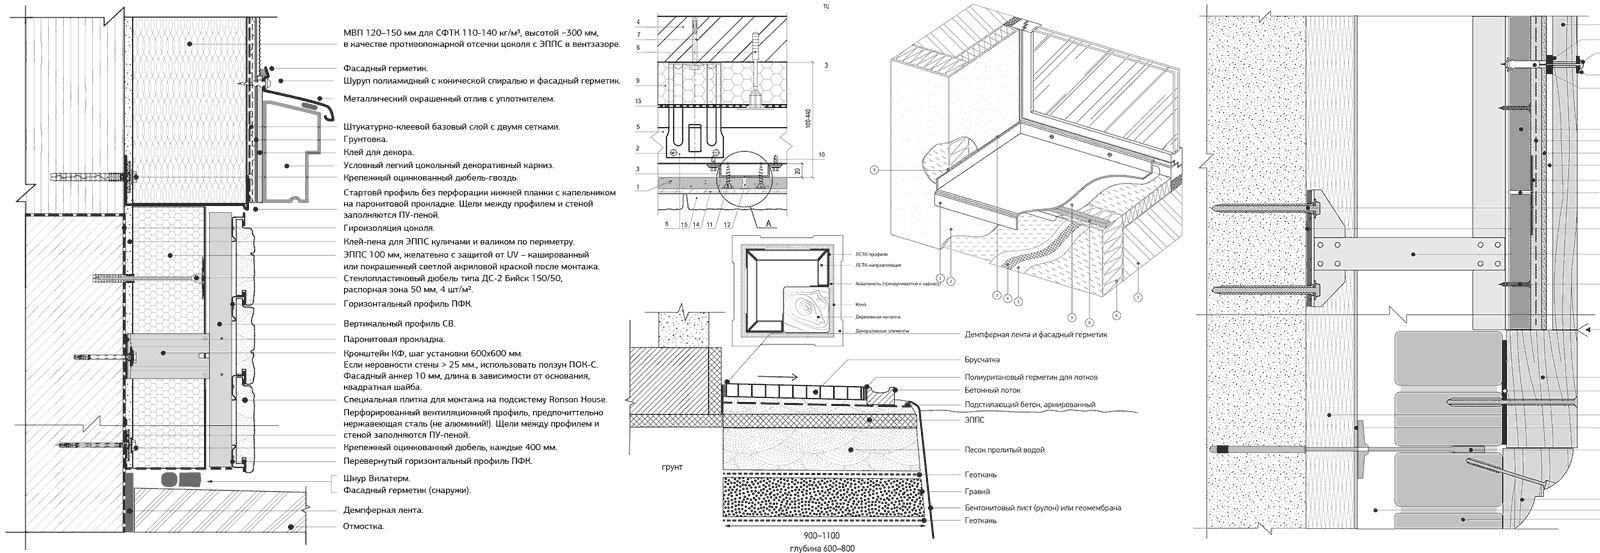 Примеры листов с чертежами и инструкциями по отделке фасада